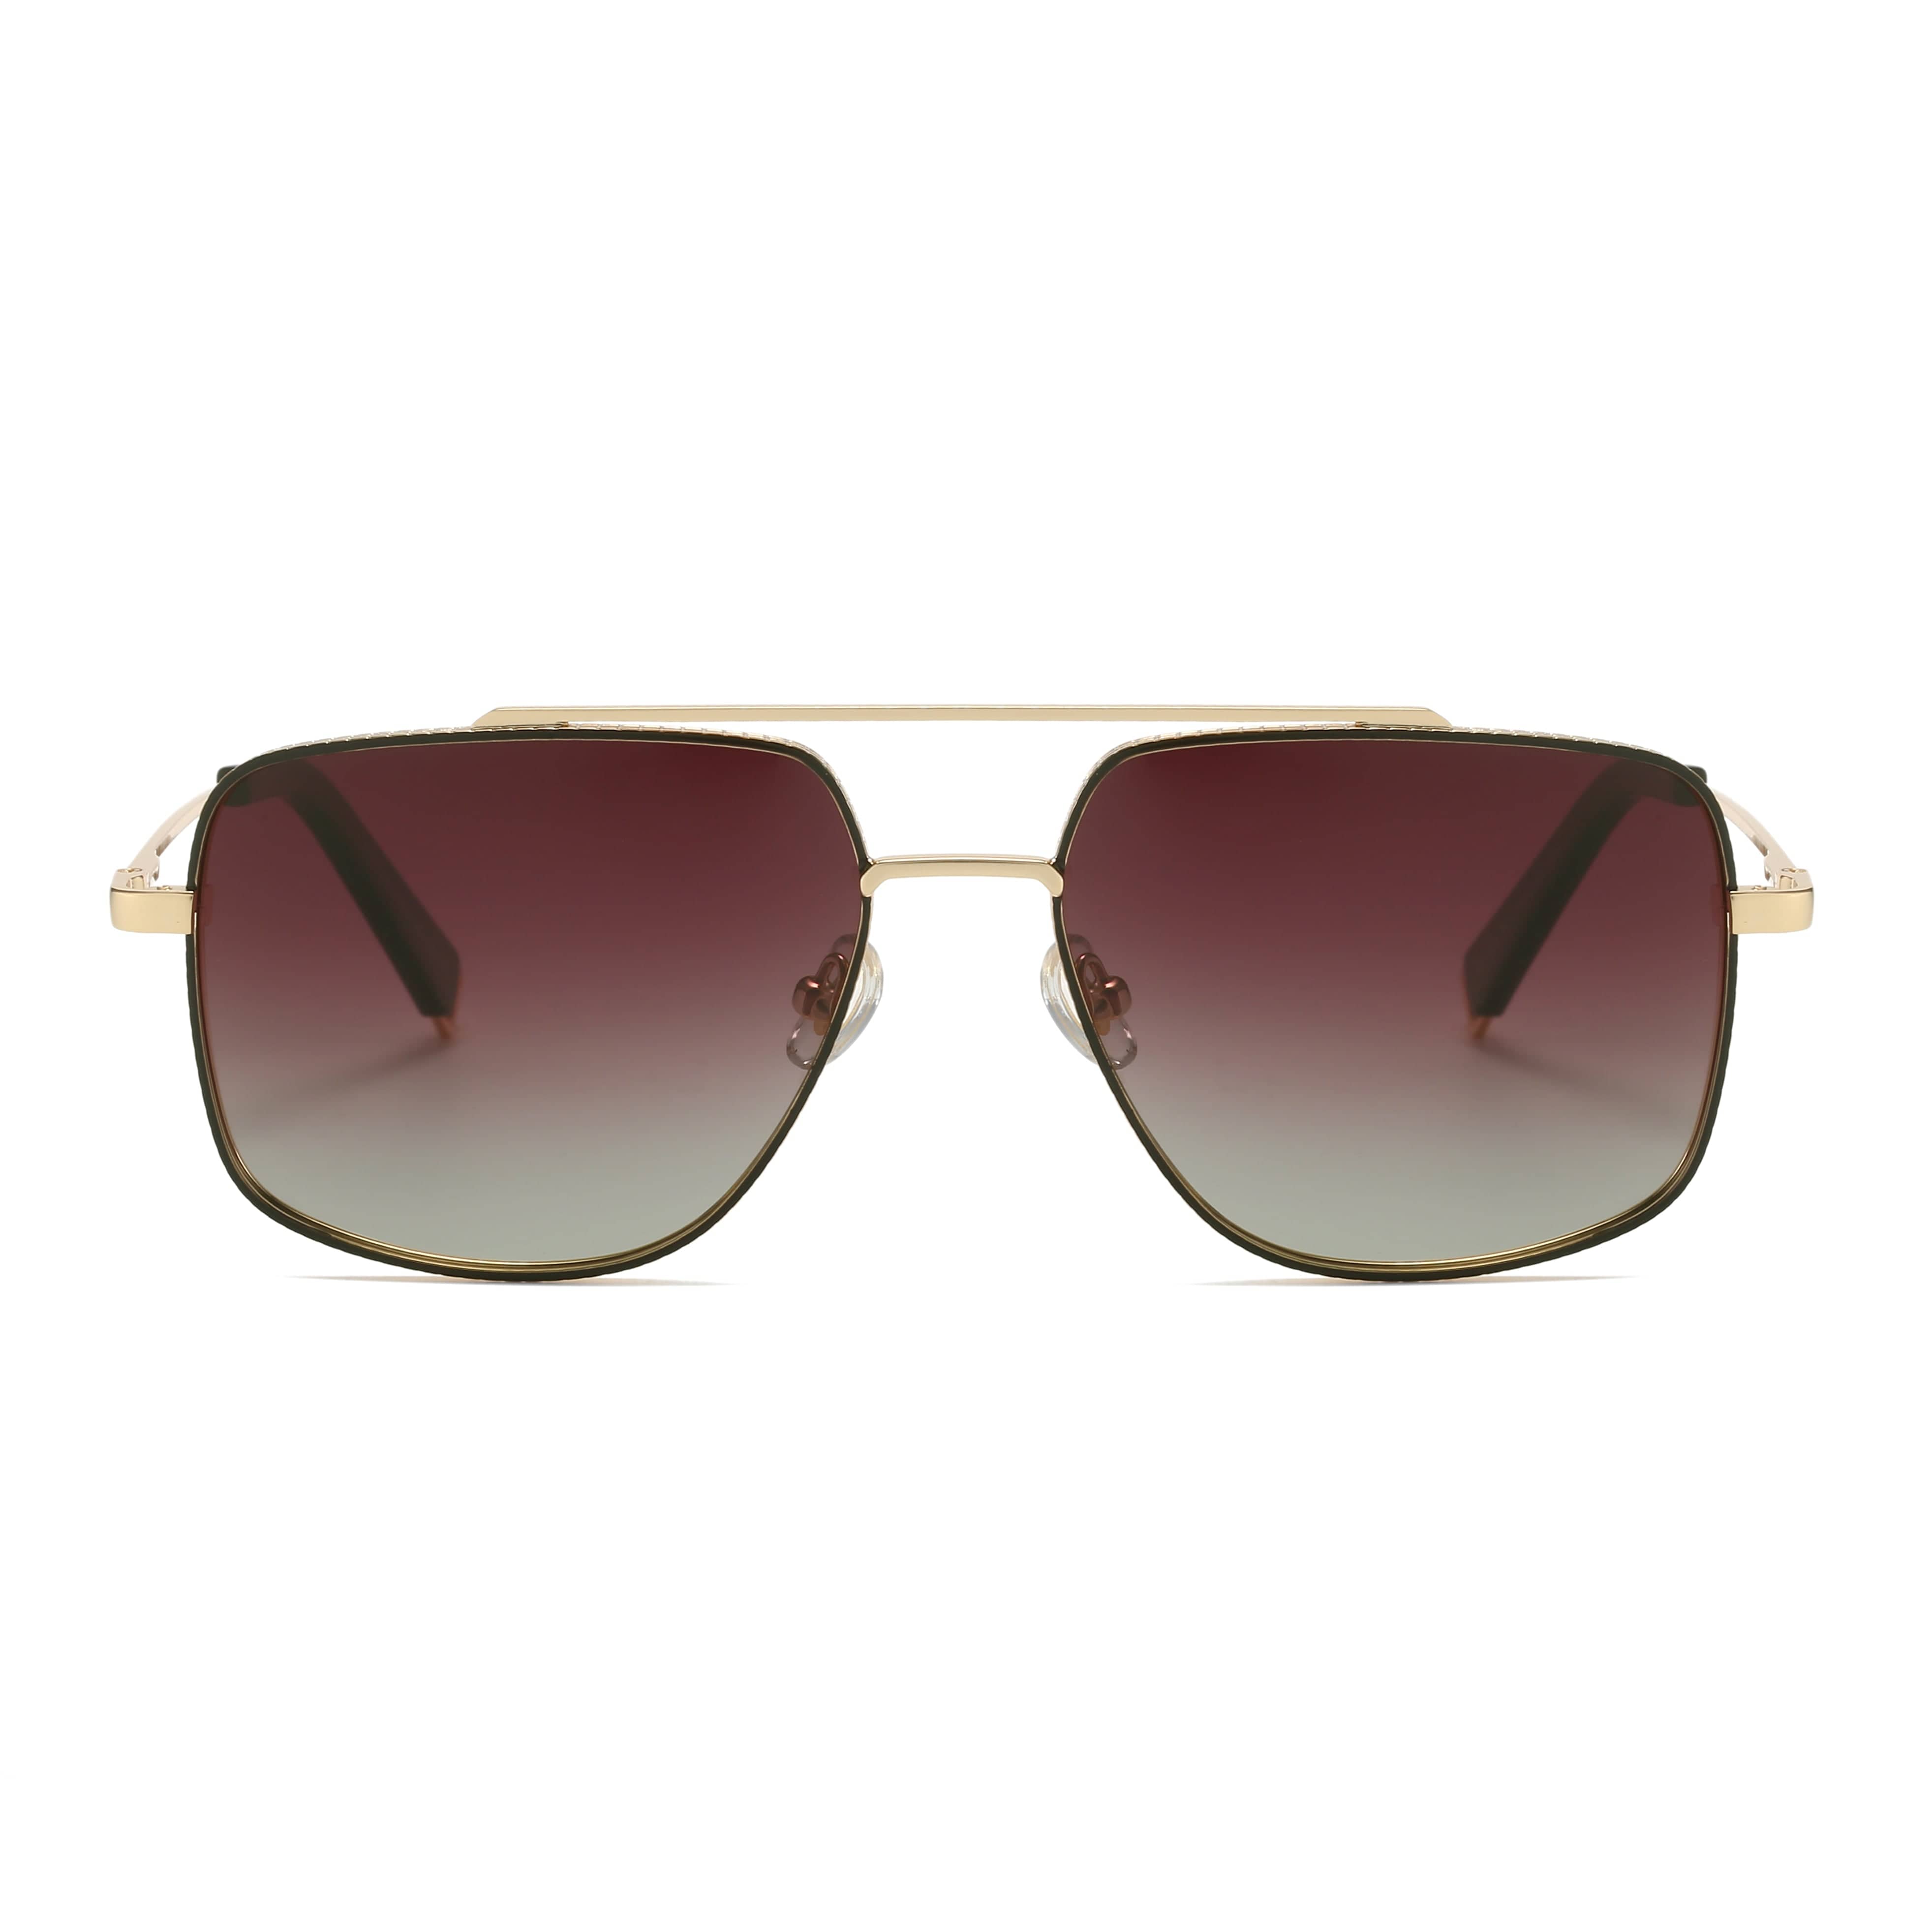 GIUSTIZIERI VECCHI Sunglasses Medium / Light Gold/Brown Blaze Shield Uno